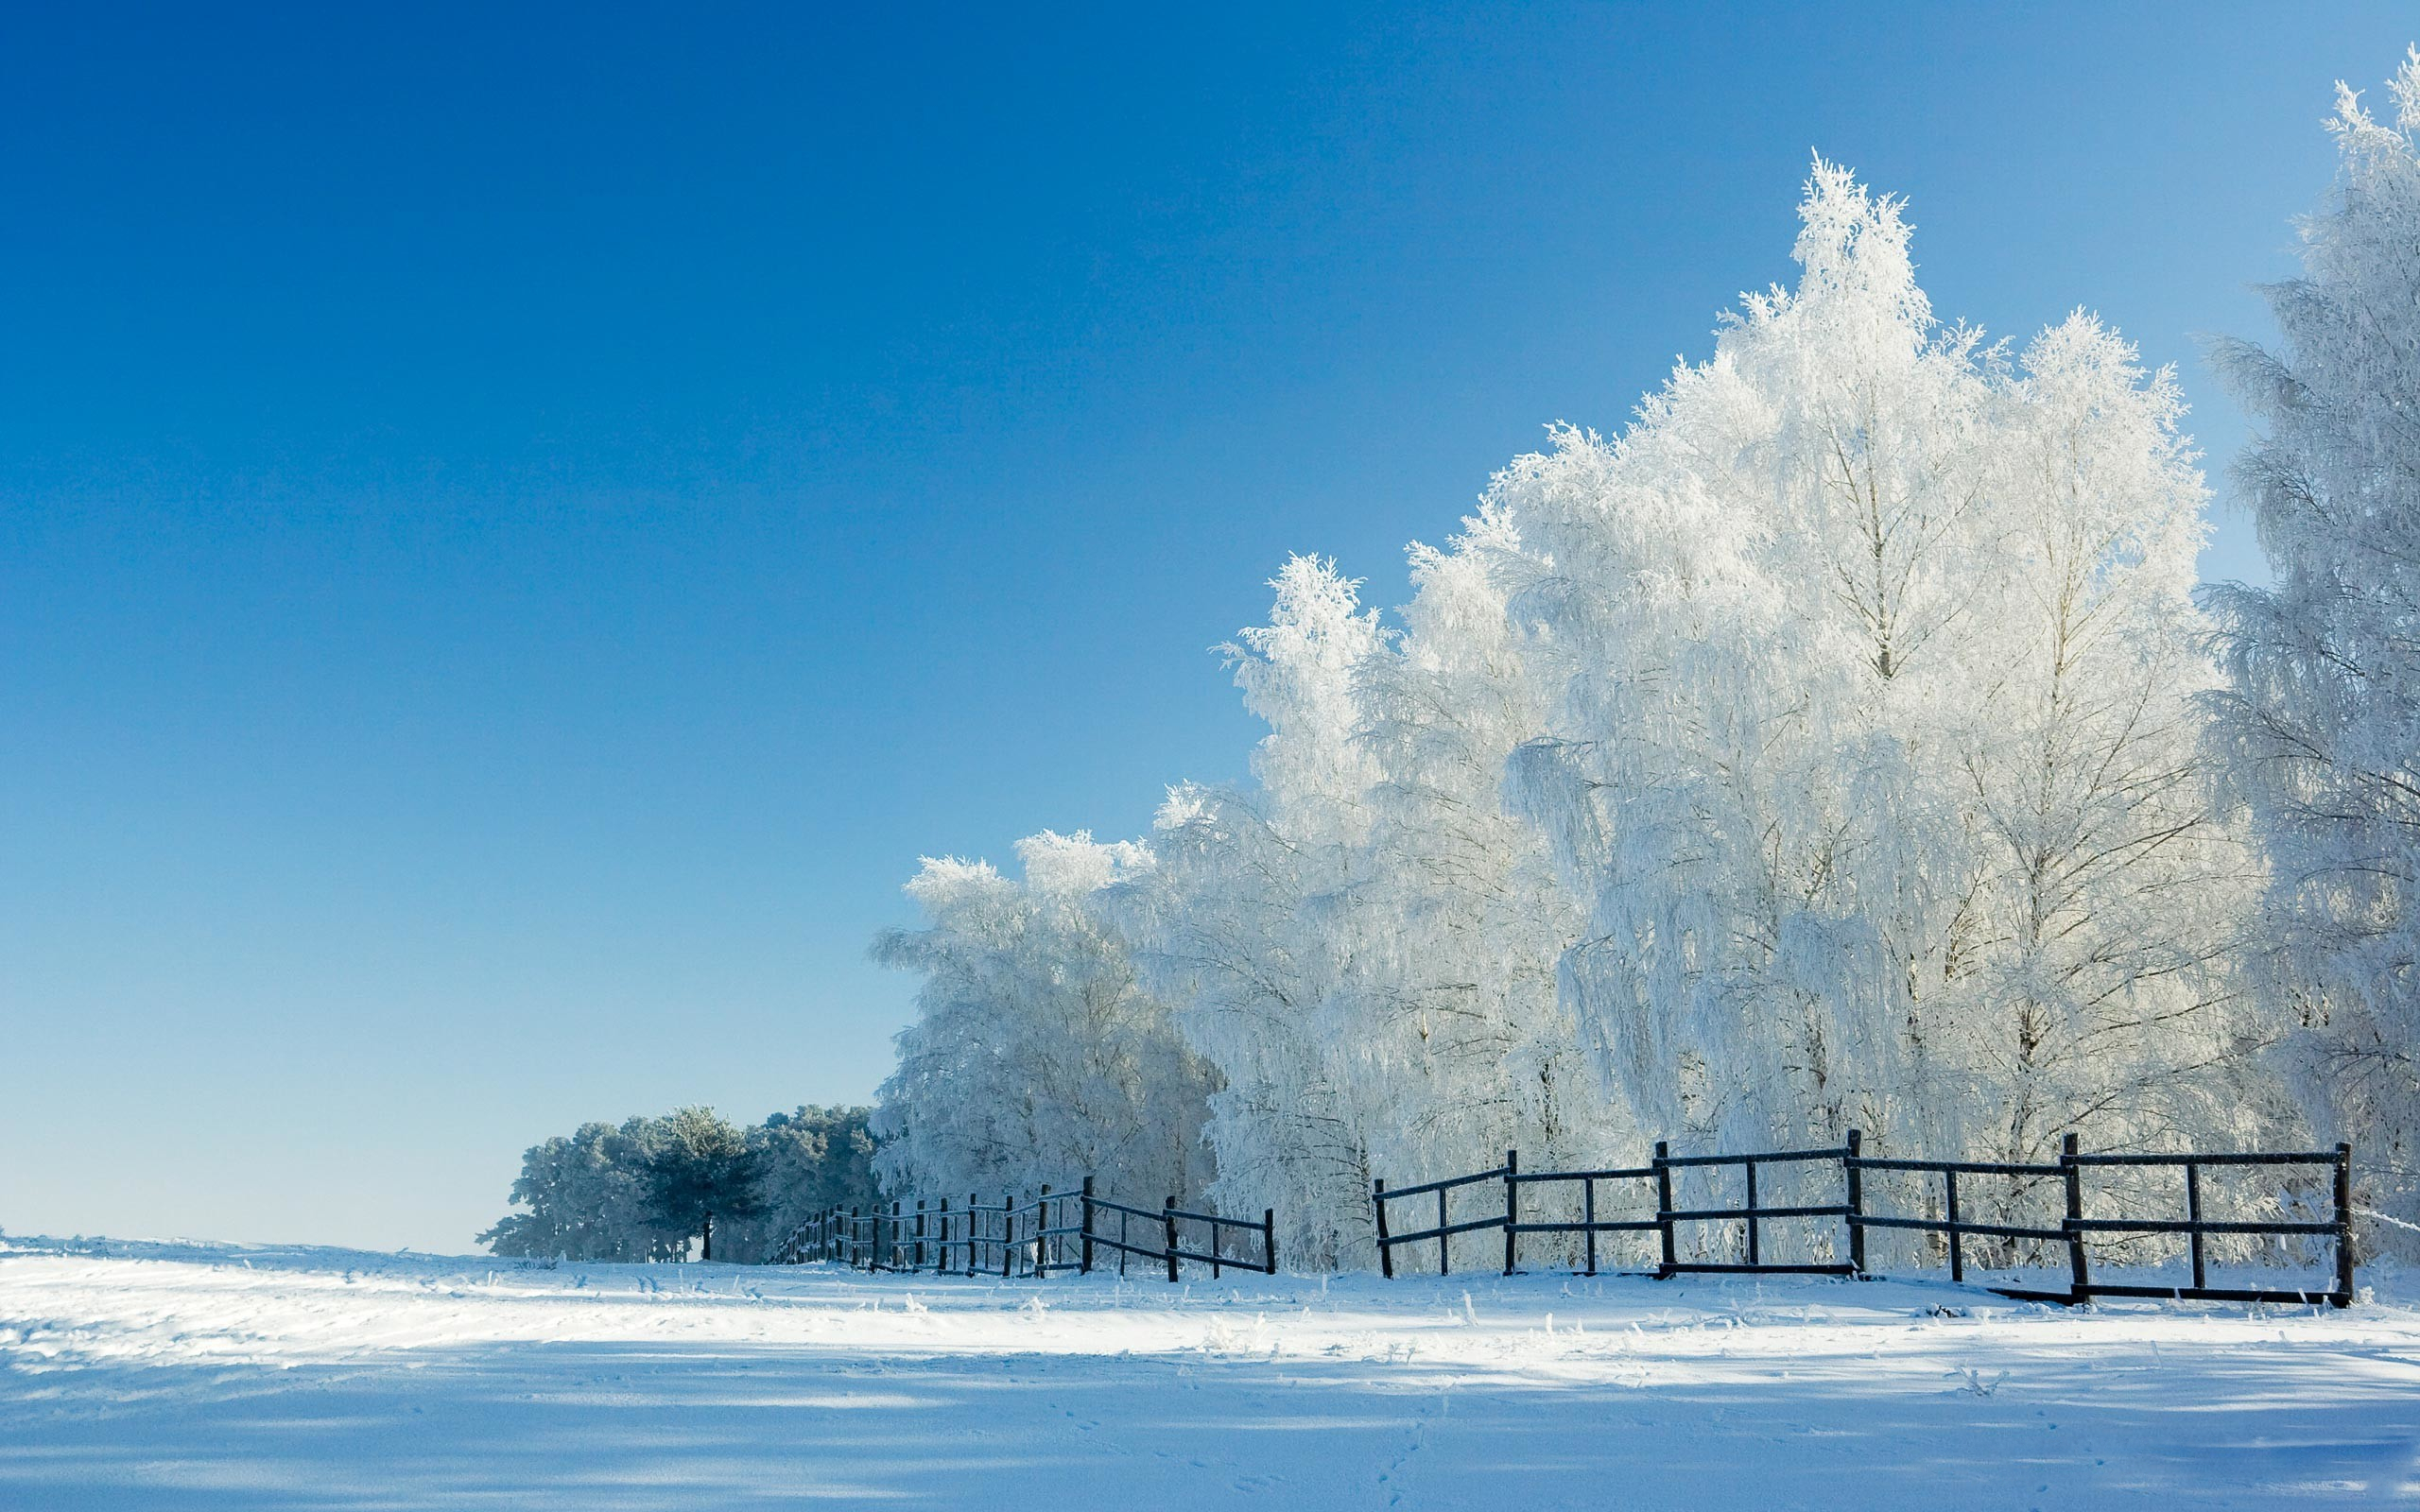 Скачать обои бесплатно Зима, Природа, Снег, Парк, Дерево, Ограда, Земля/природа картинка на рабочий стол ПК